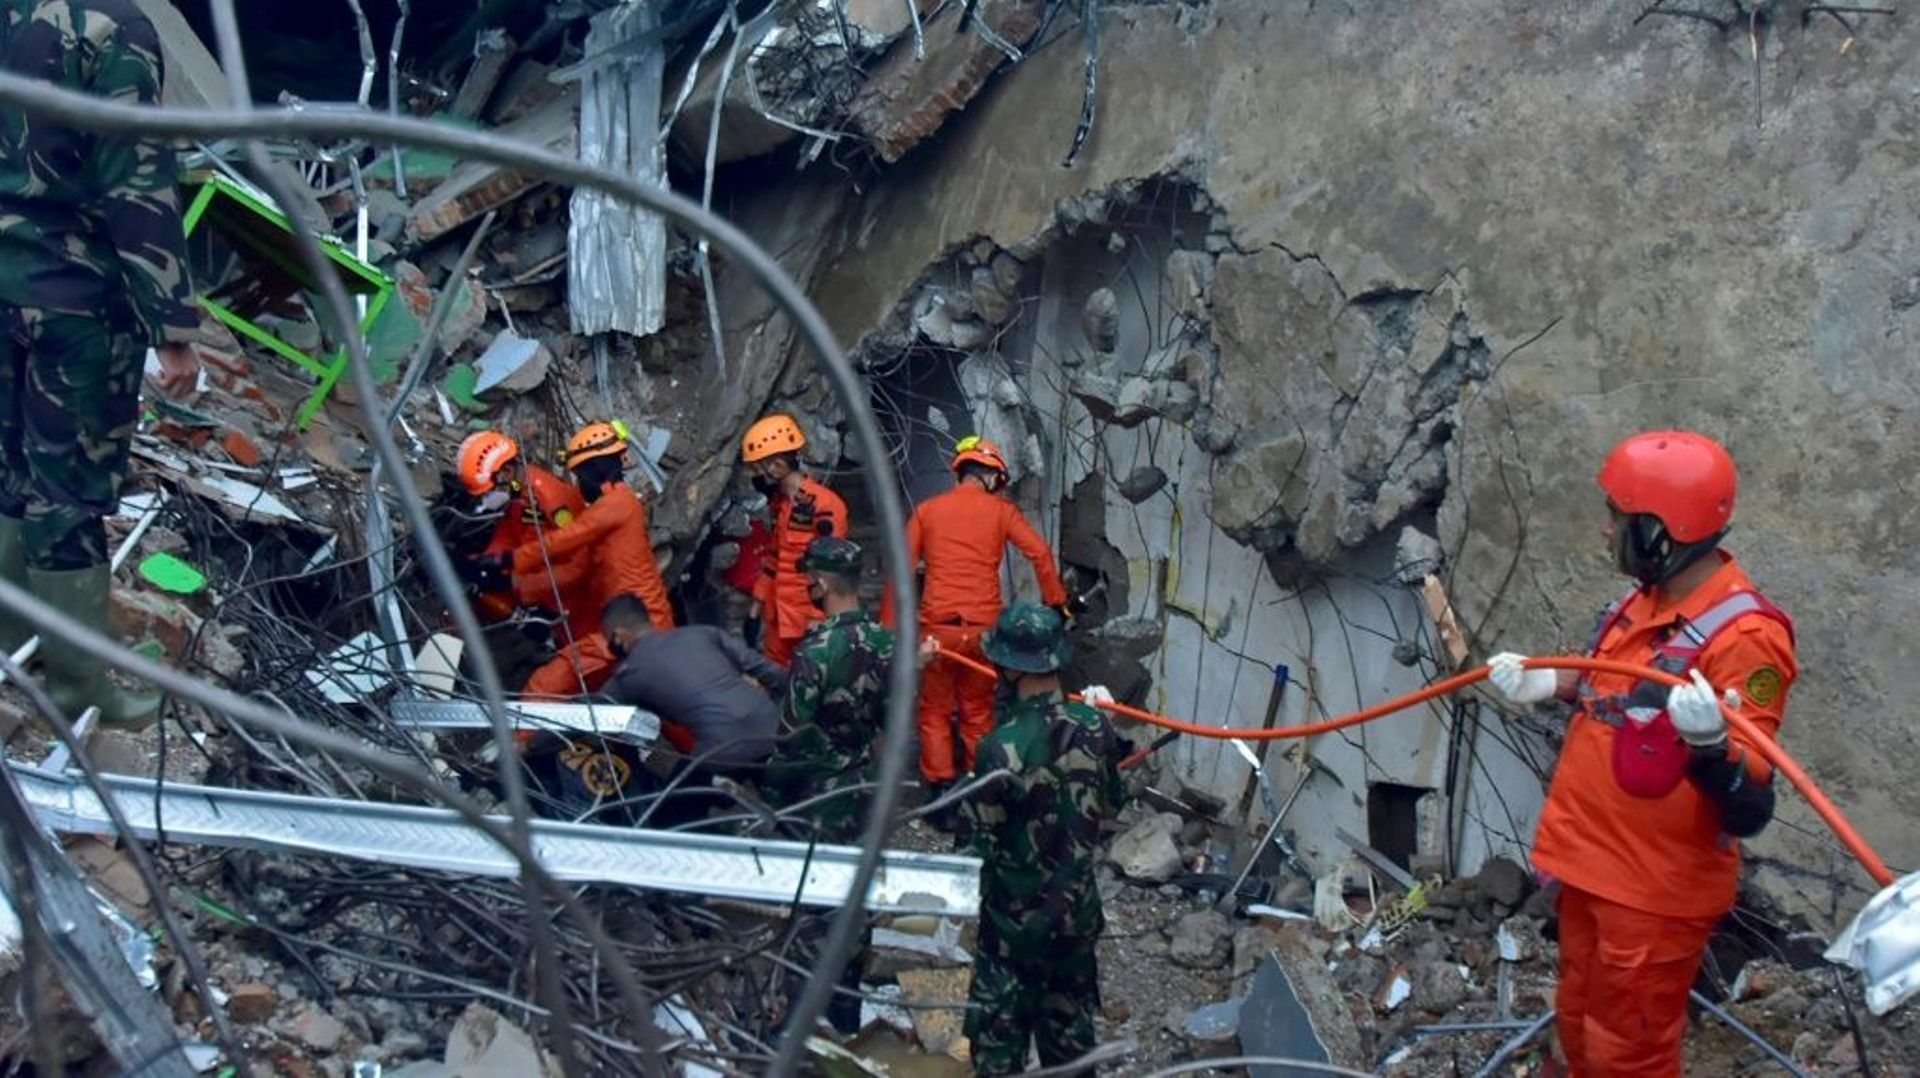 Des sauveteurs recherchent des survivants dans les ruines d'un bâtiment, à Mamuju, sur l'île des Célèbes en Indonésie, le 15 janvier 2021